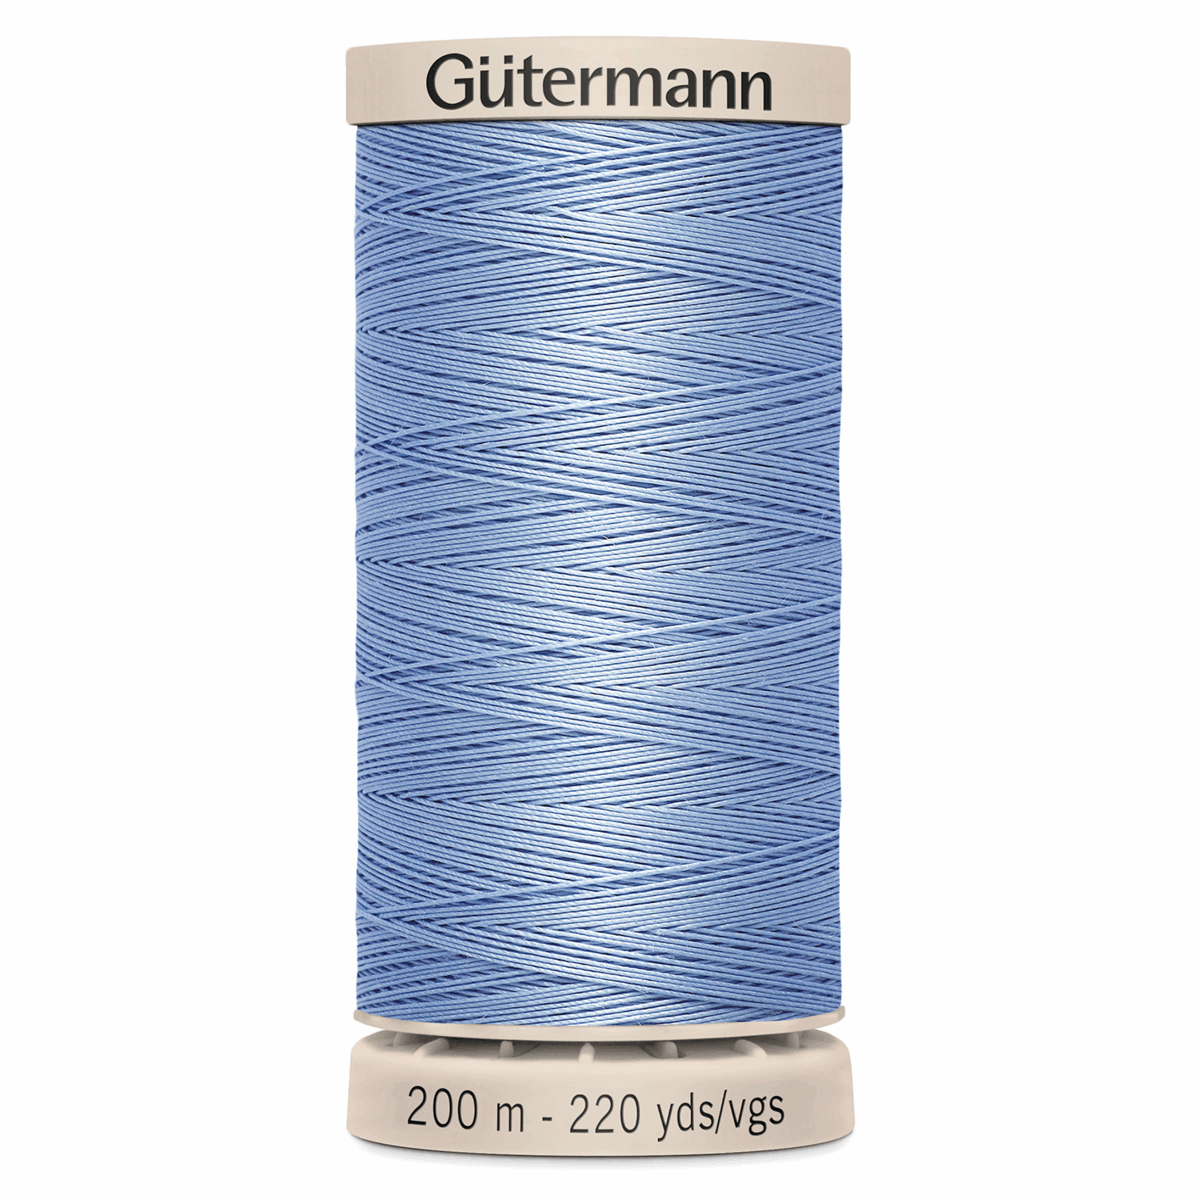 Gutermann Quilting Thread 200m - Colour 5826